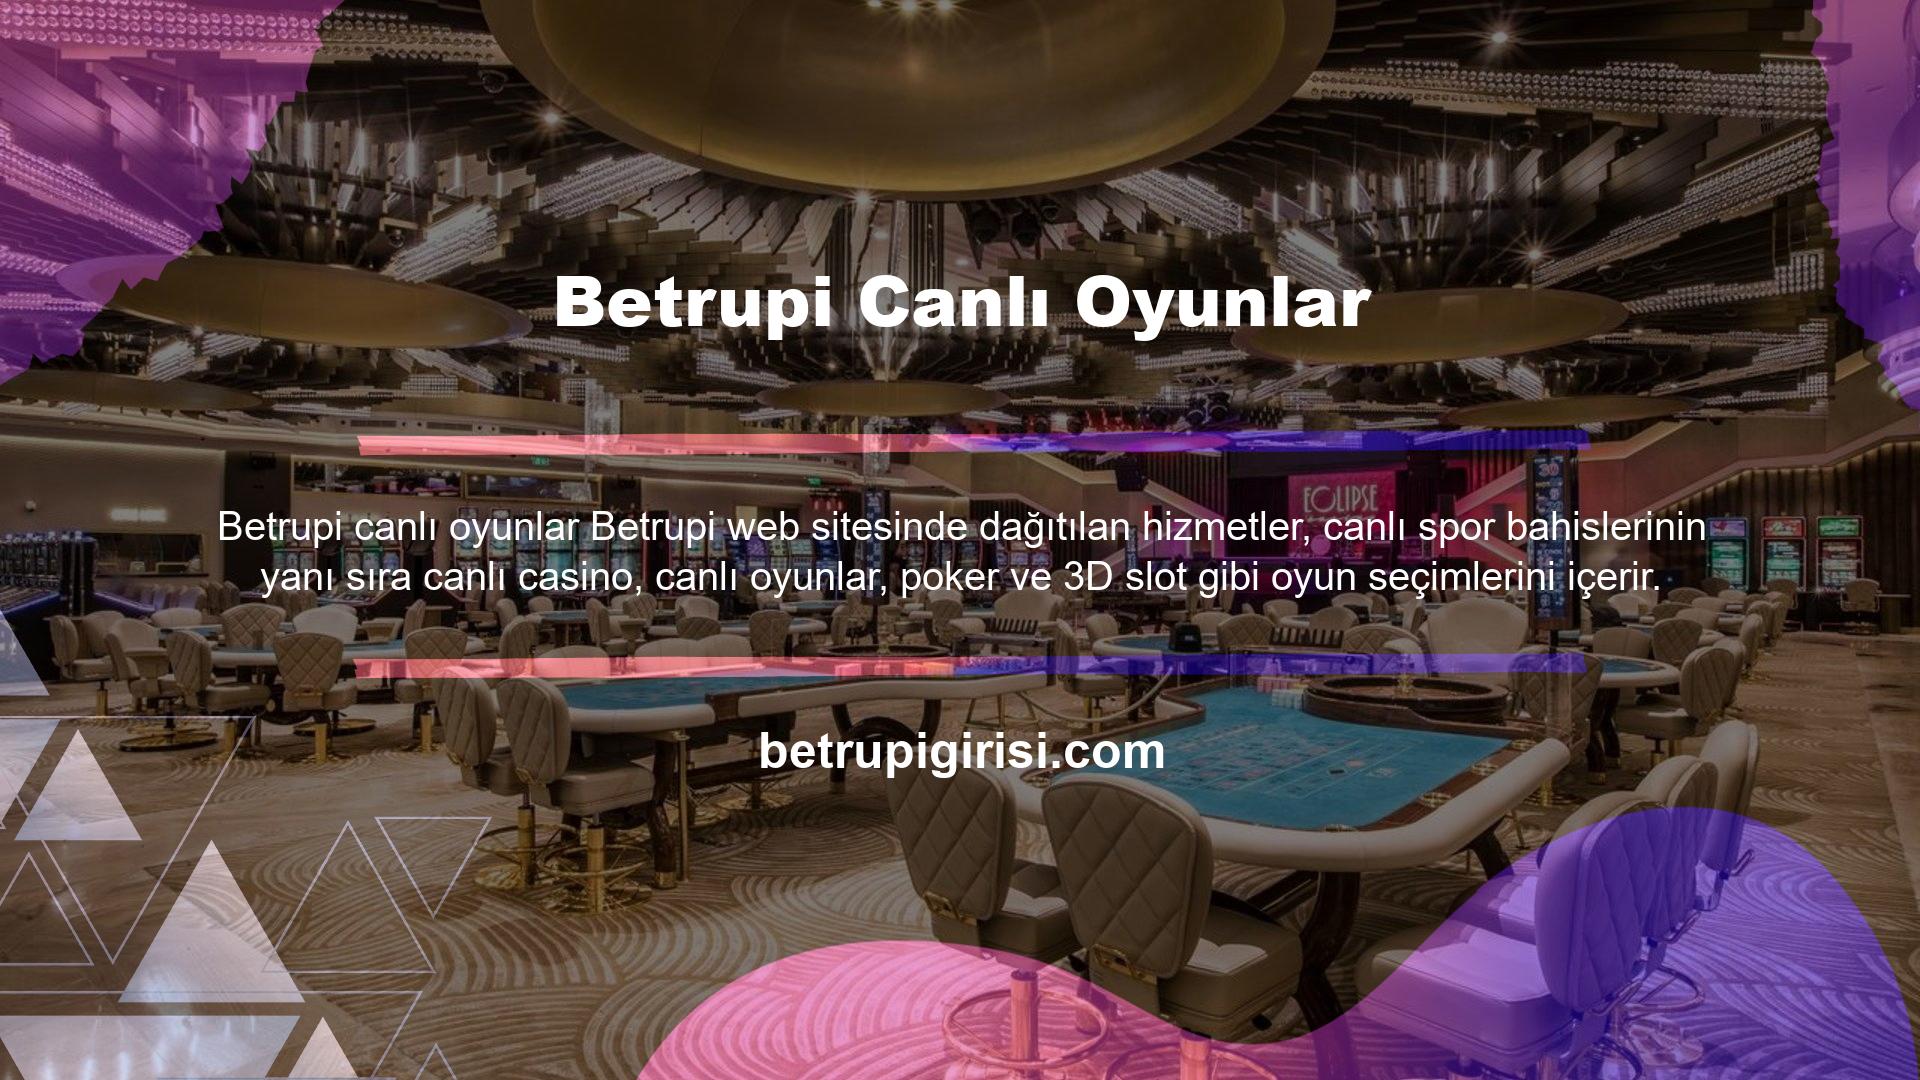 Betrupi poker ve casino oyunlarını kullananlar için detaylı bahis ve oyun seçenekleri sunulmaktadır